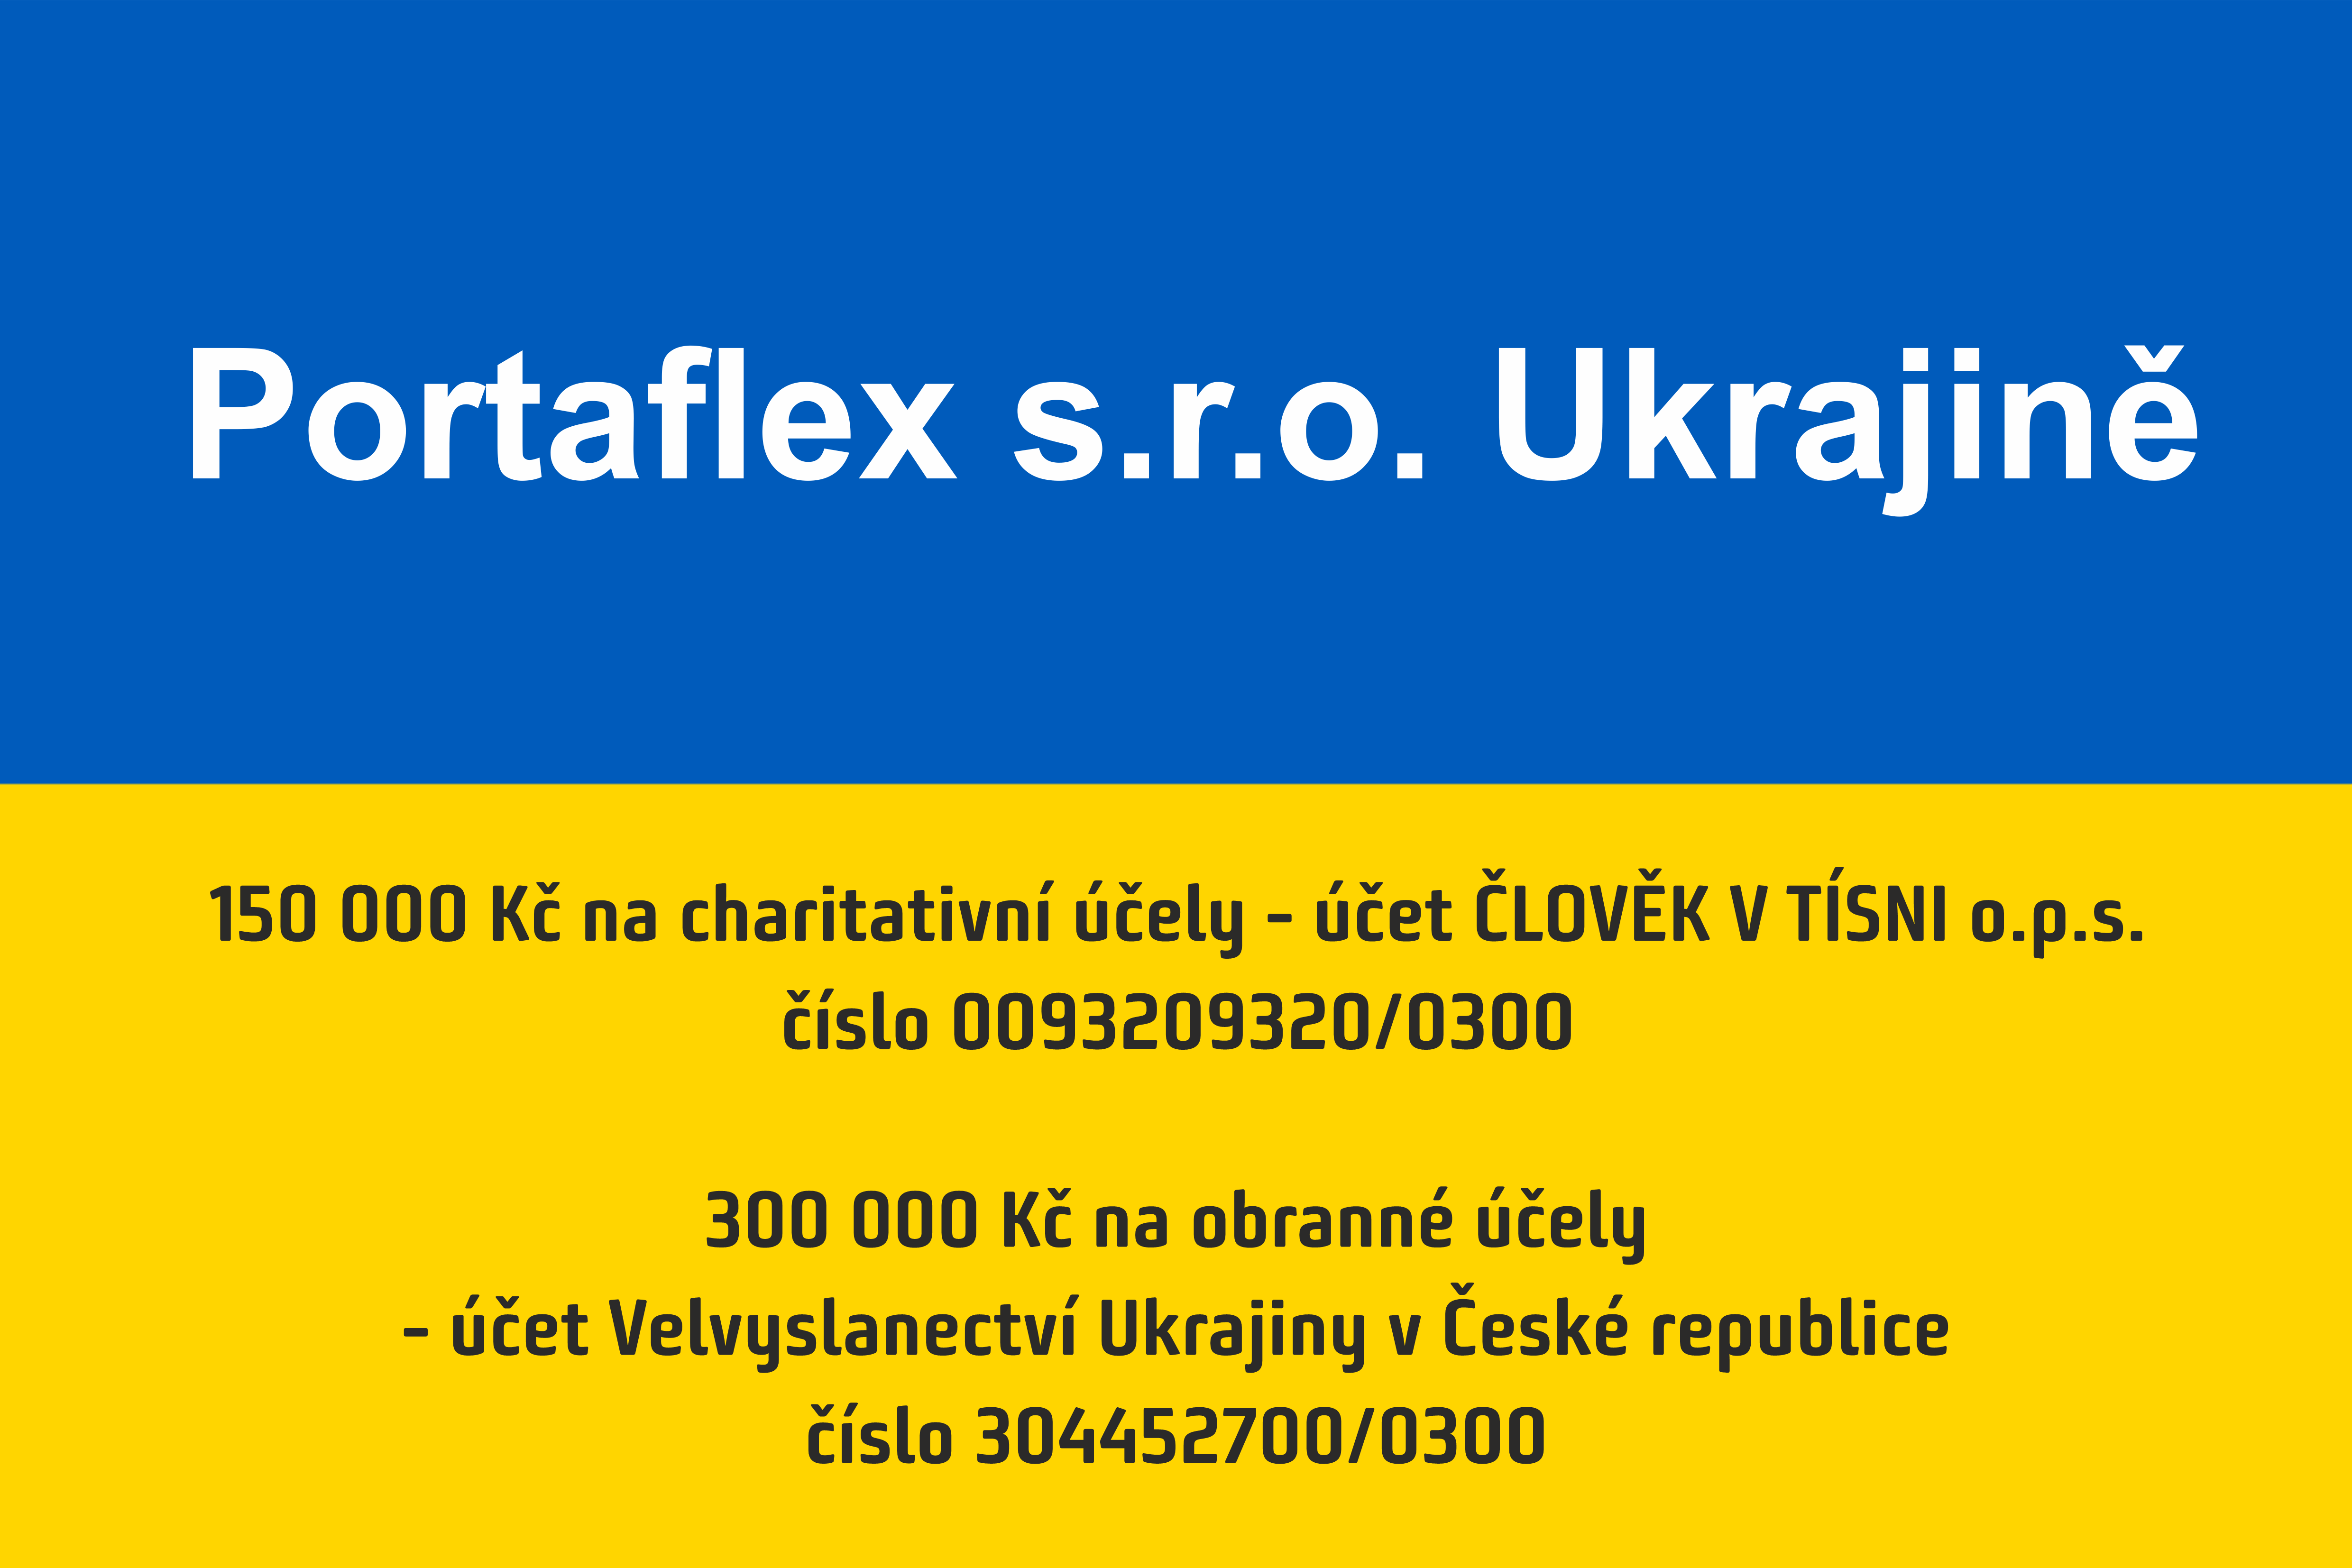 Pomáháme Ukrajině